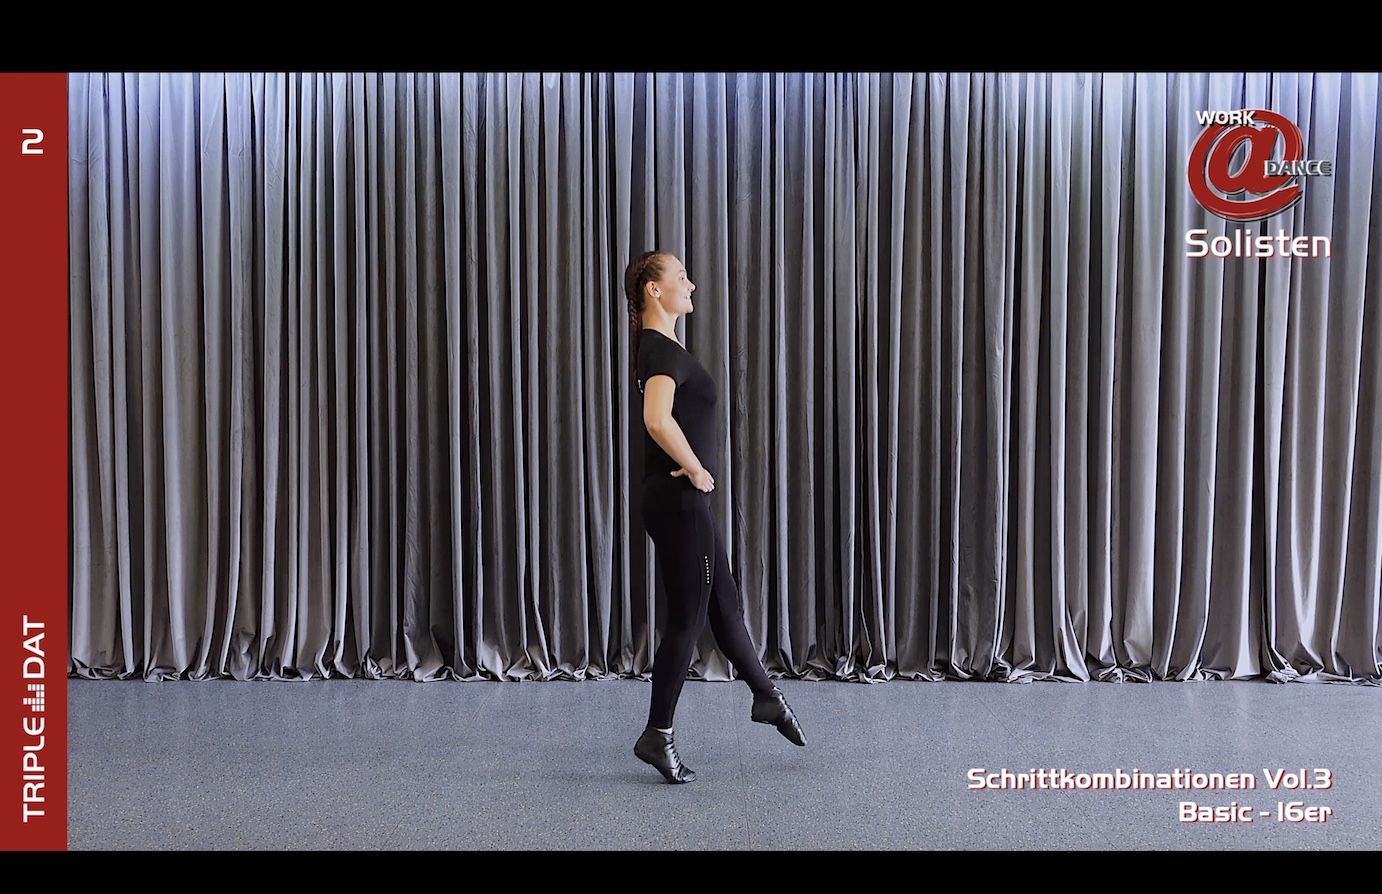 Work@Dance Solisten Schrittkombinationen 03 - Basic